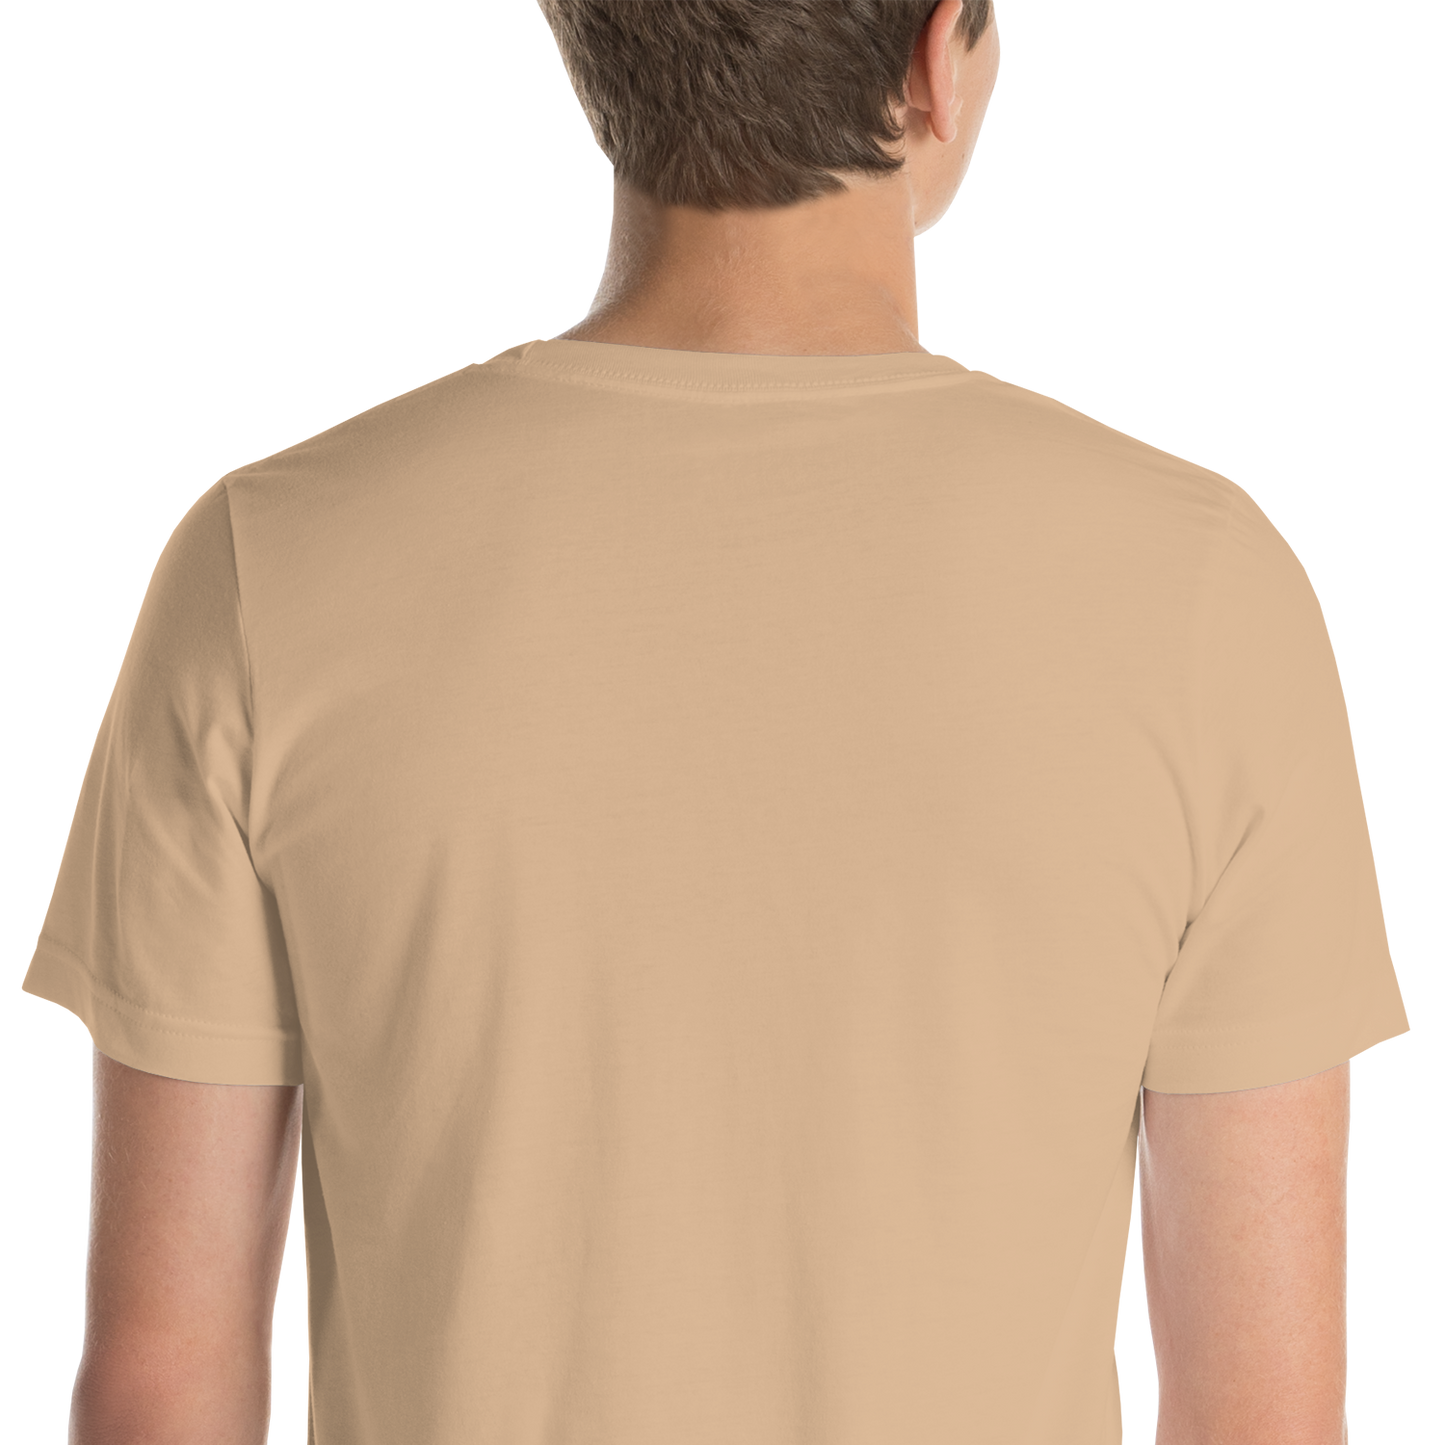 Camel Voyage -Unisex t-shirt